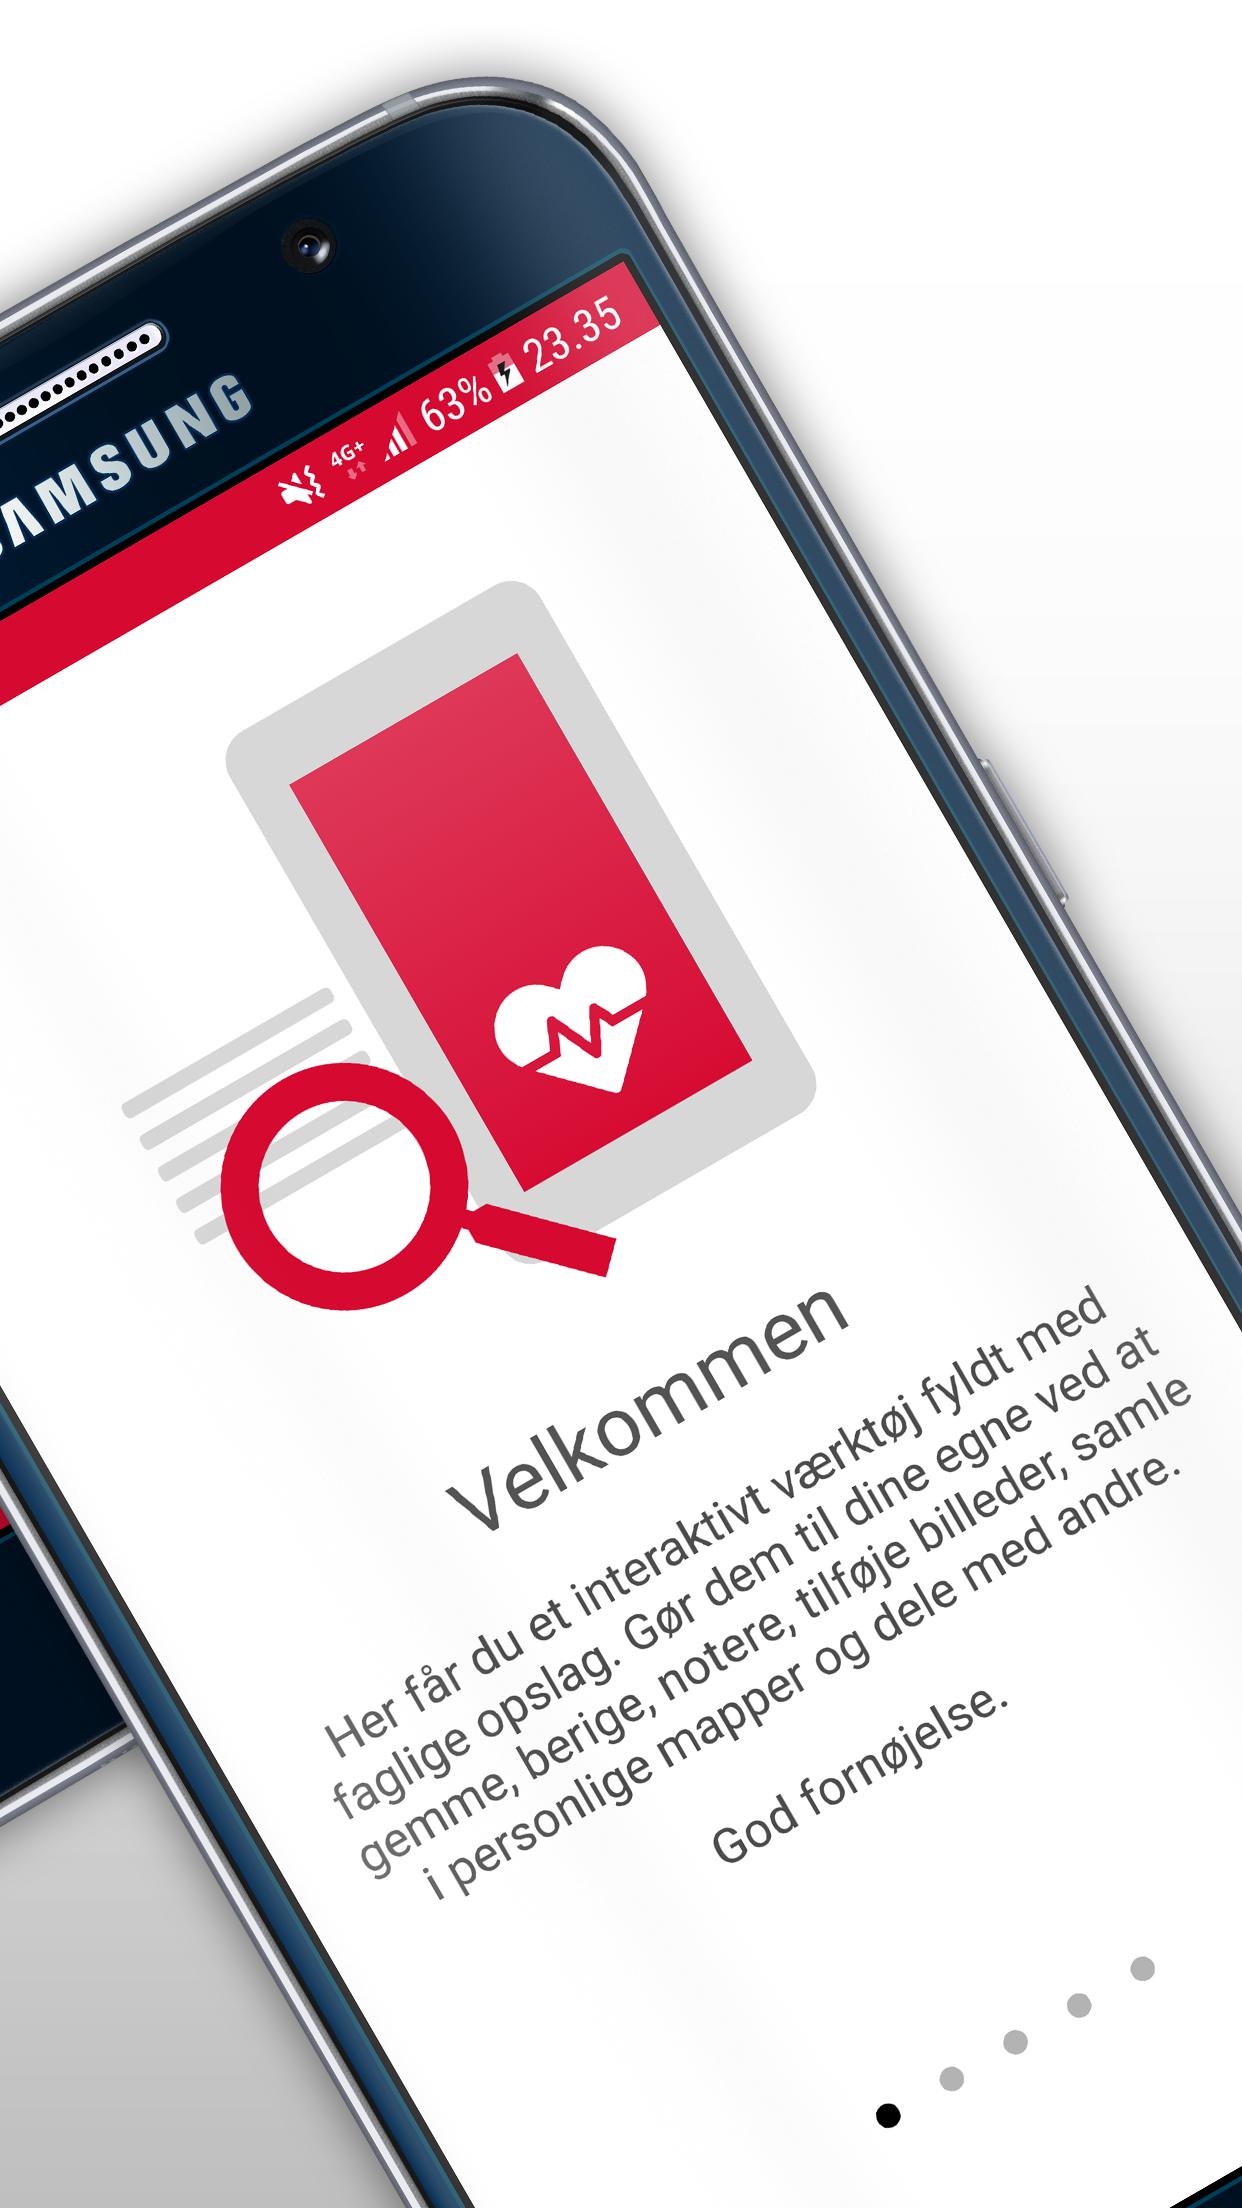 Sygeplejeordbogen for Android - APK Download